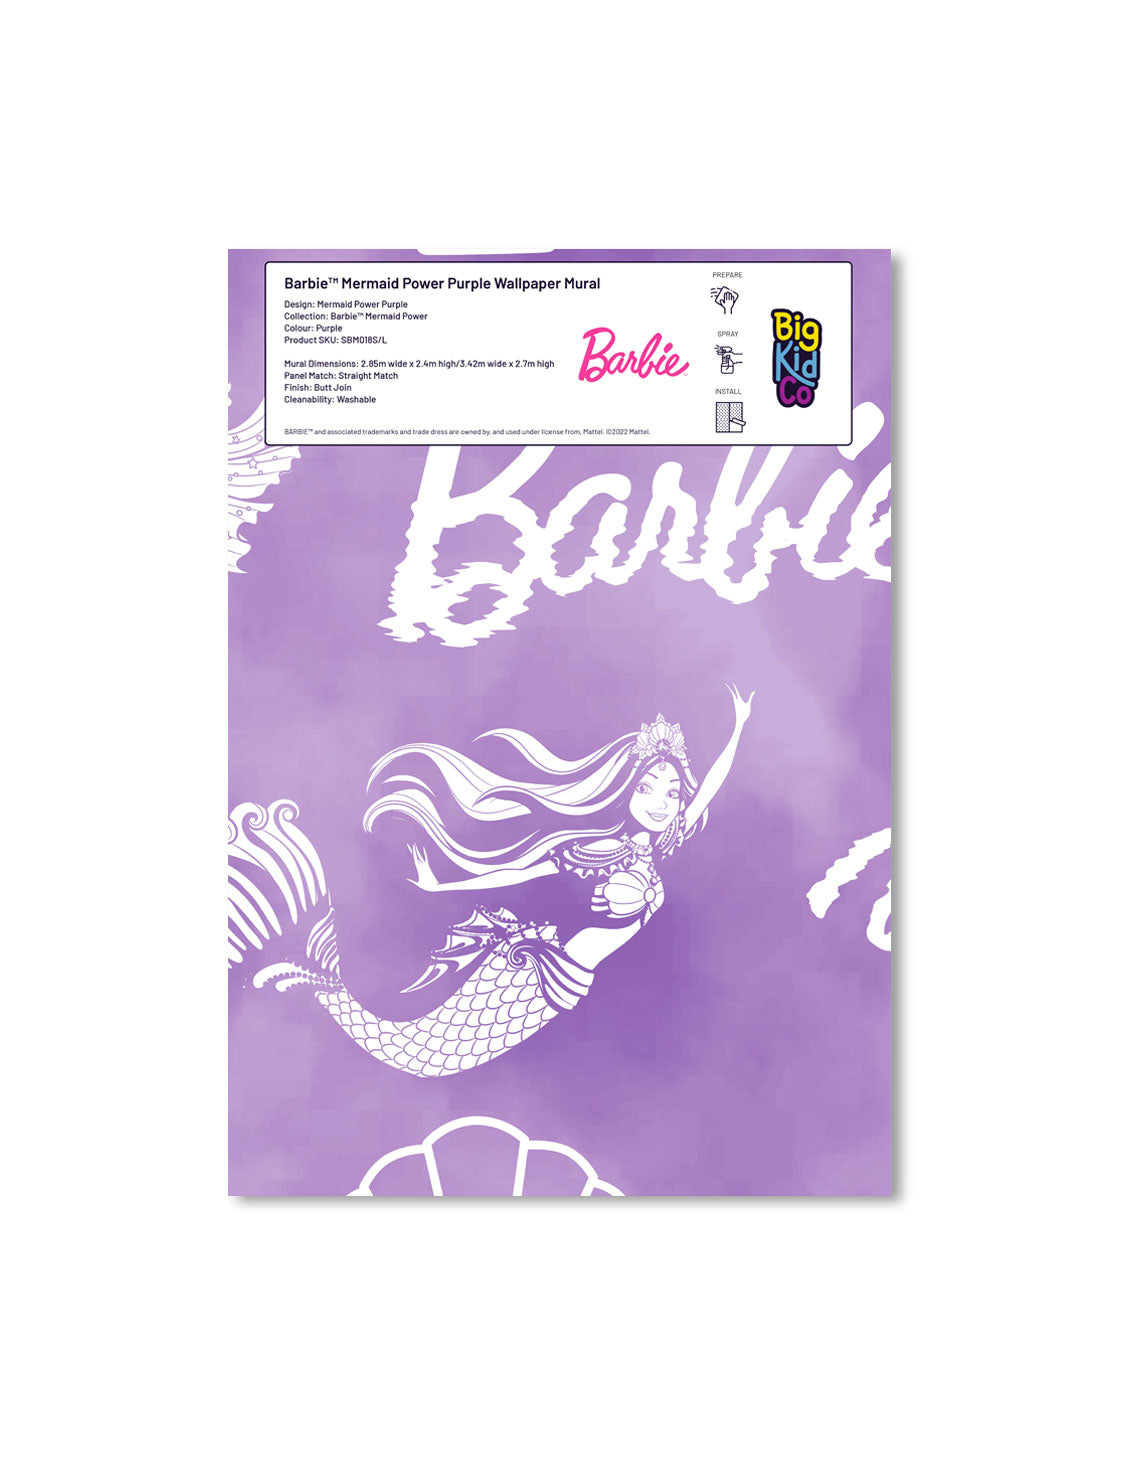 Barbie Mermaid Power Purple Wallpaper Mural